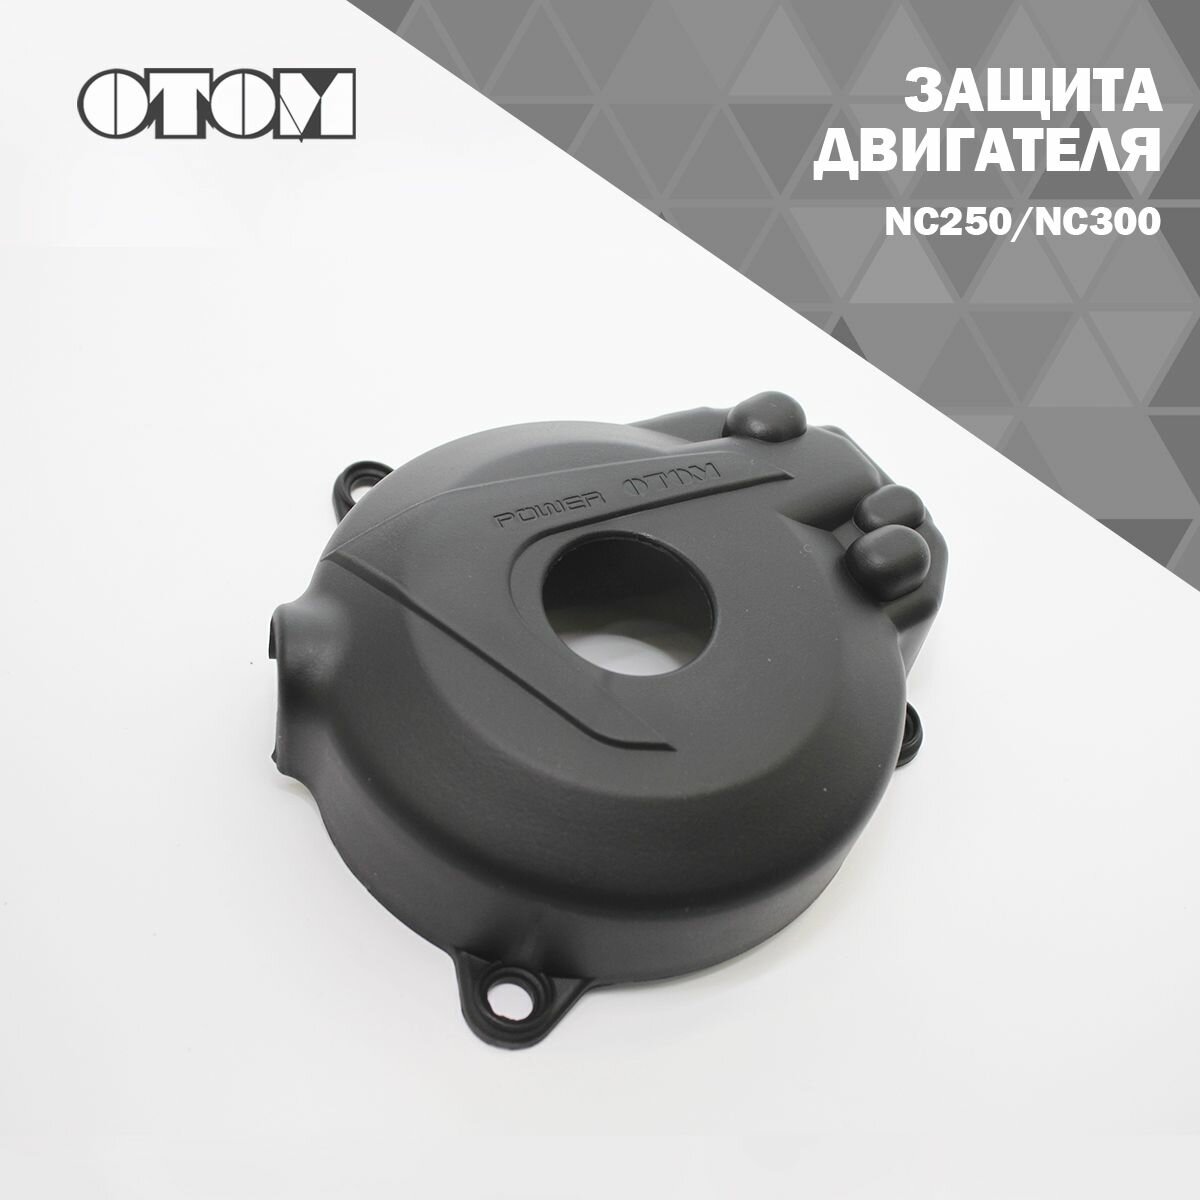 Защита двигателя NC250/NC300 OTOM (черный)